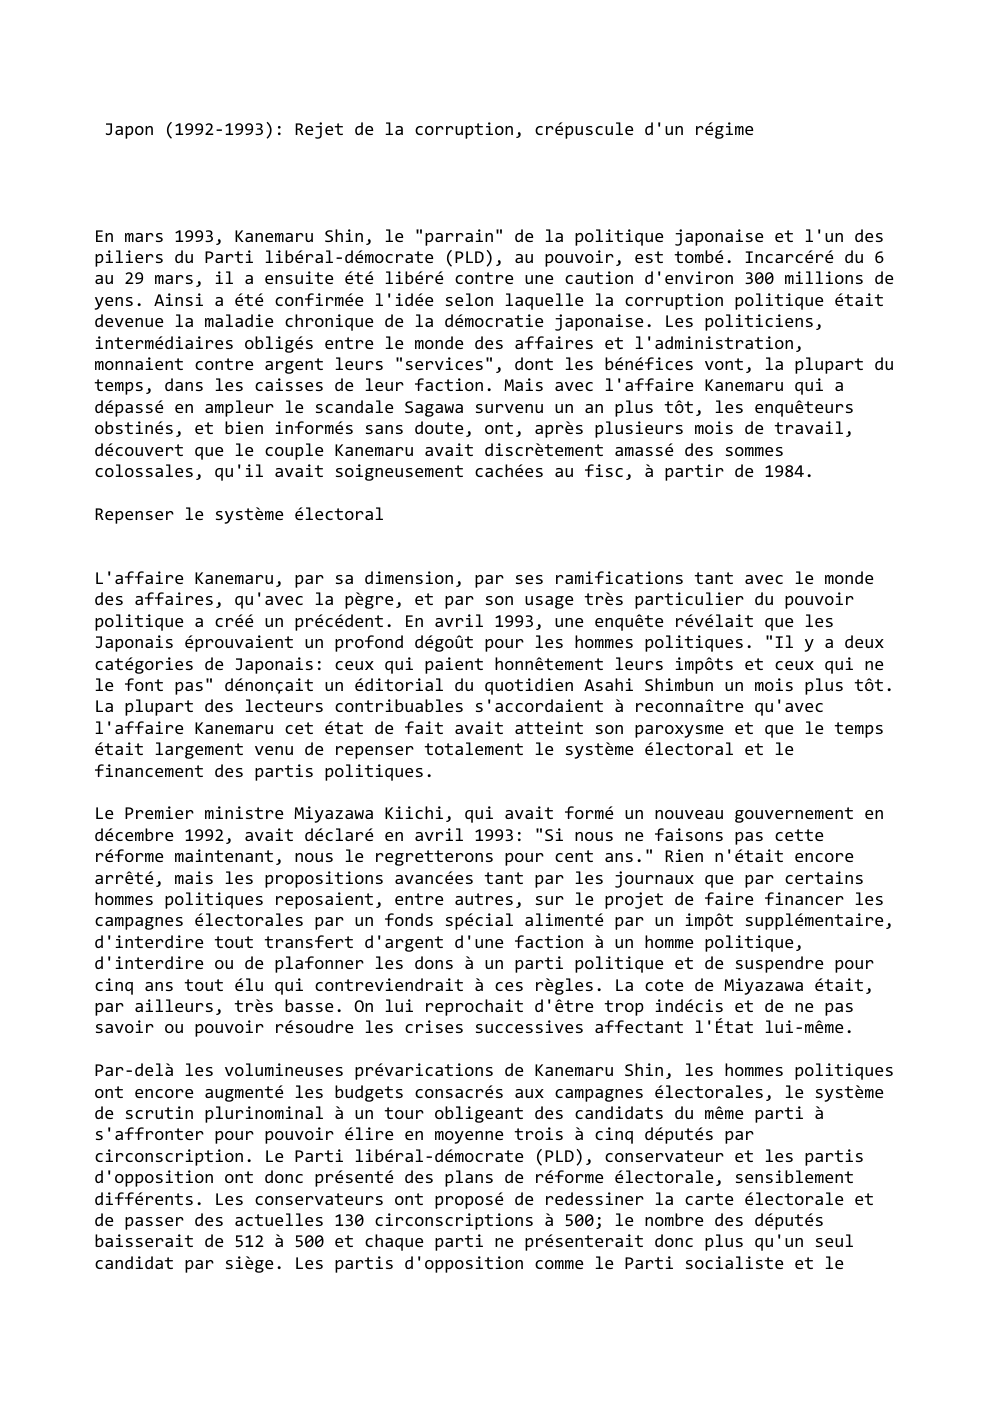 Prévisualisation du document Japon (1992-1993): Rejet de la corruption, crépuscule d'un régime

En mars 1993, Kanemaru Shin, le "parrain" de la politique japonaise...